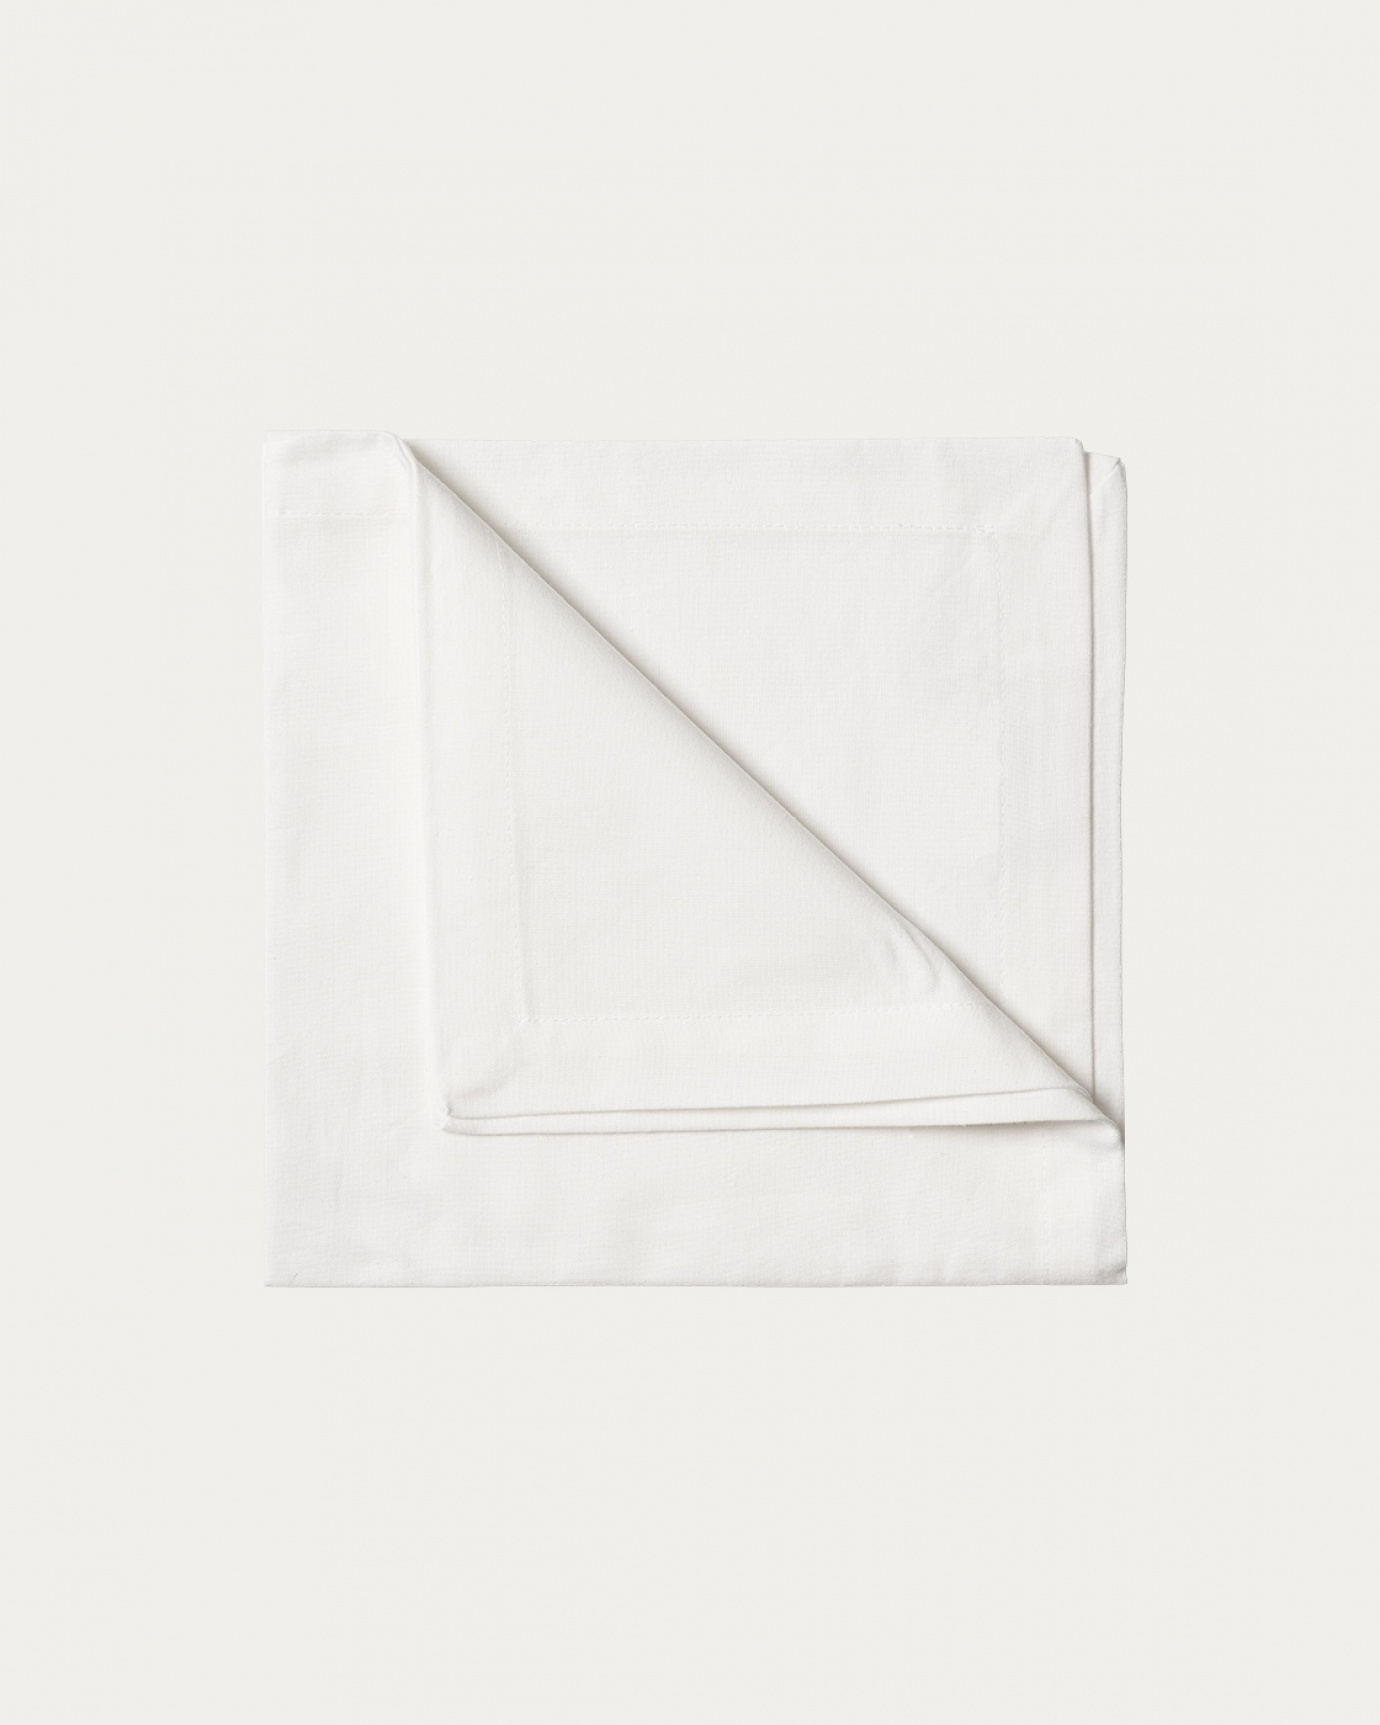 Immagine prodotto bianco ROBERT tovagliolo in morbido cotone di LINUM DESIGN. Dimensioni 45x45 cm e venduto in 4-pezzi.